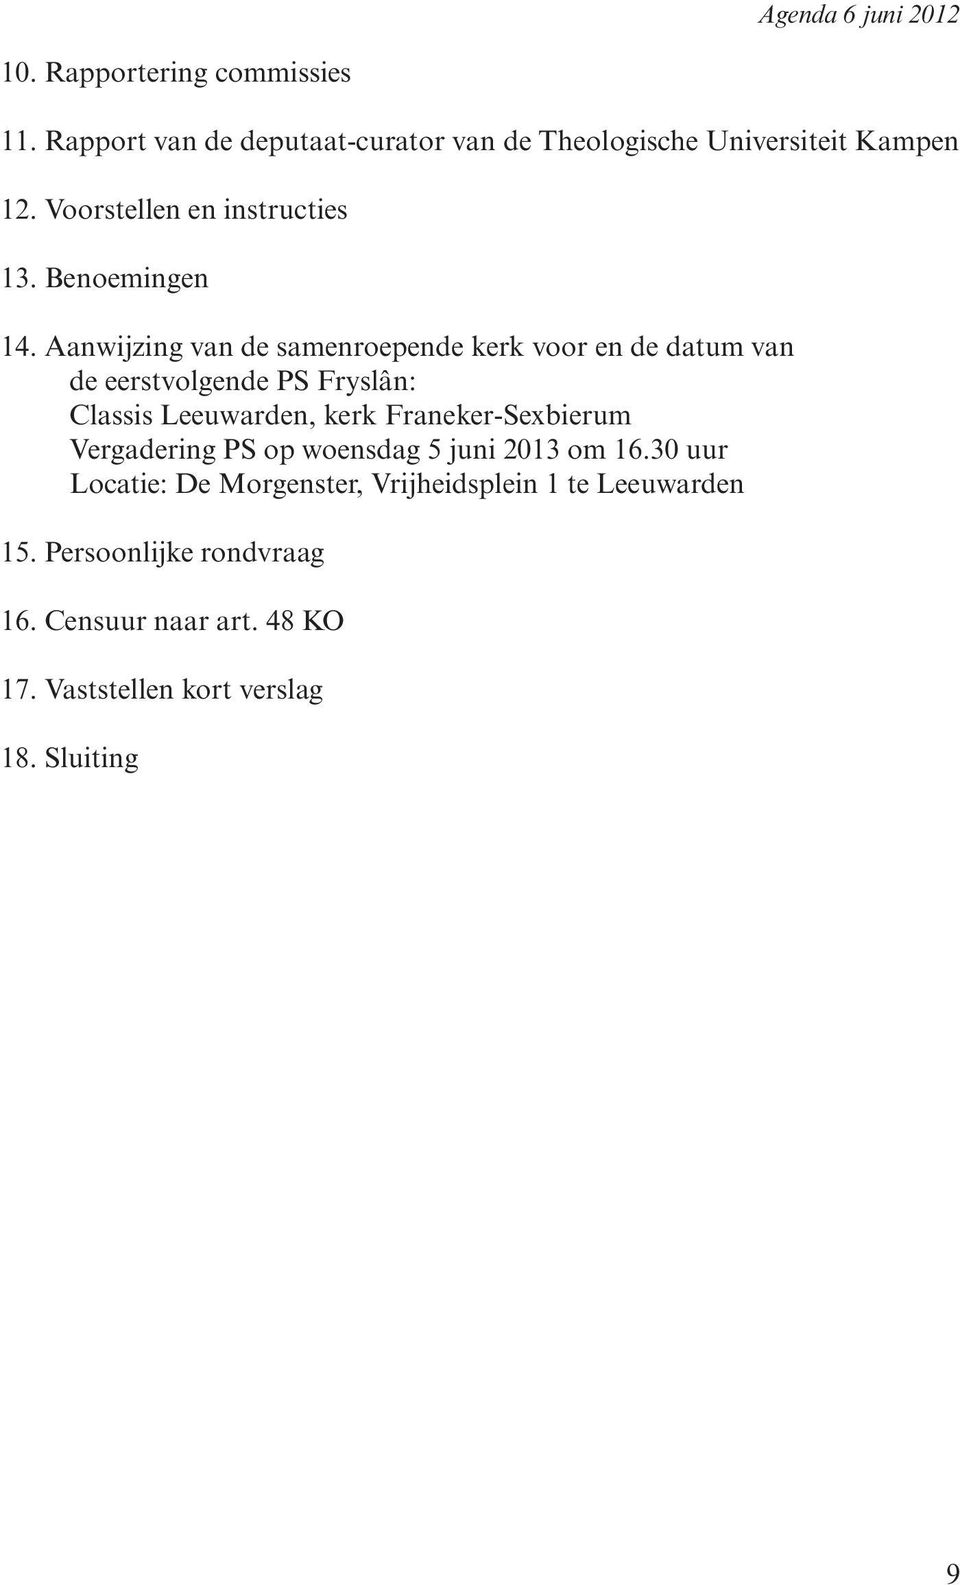 Aanwijzing van de samenroepende kerk voor en de datum van de eerstvolgende PS Fryslân: Classis Leeuwarden, kerk